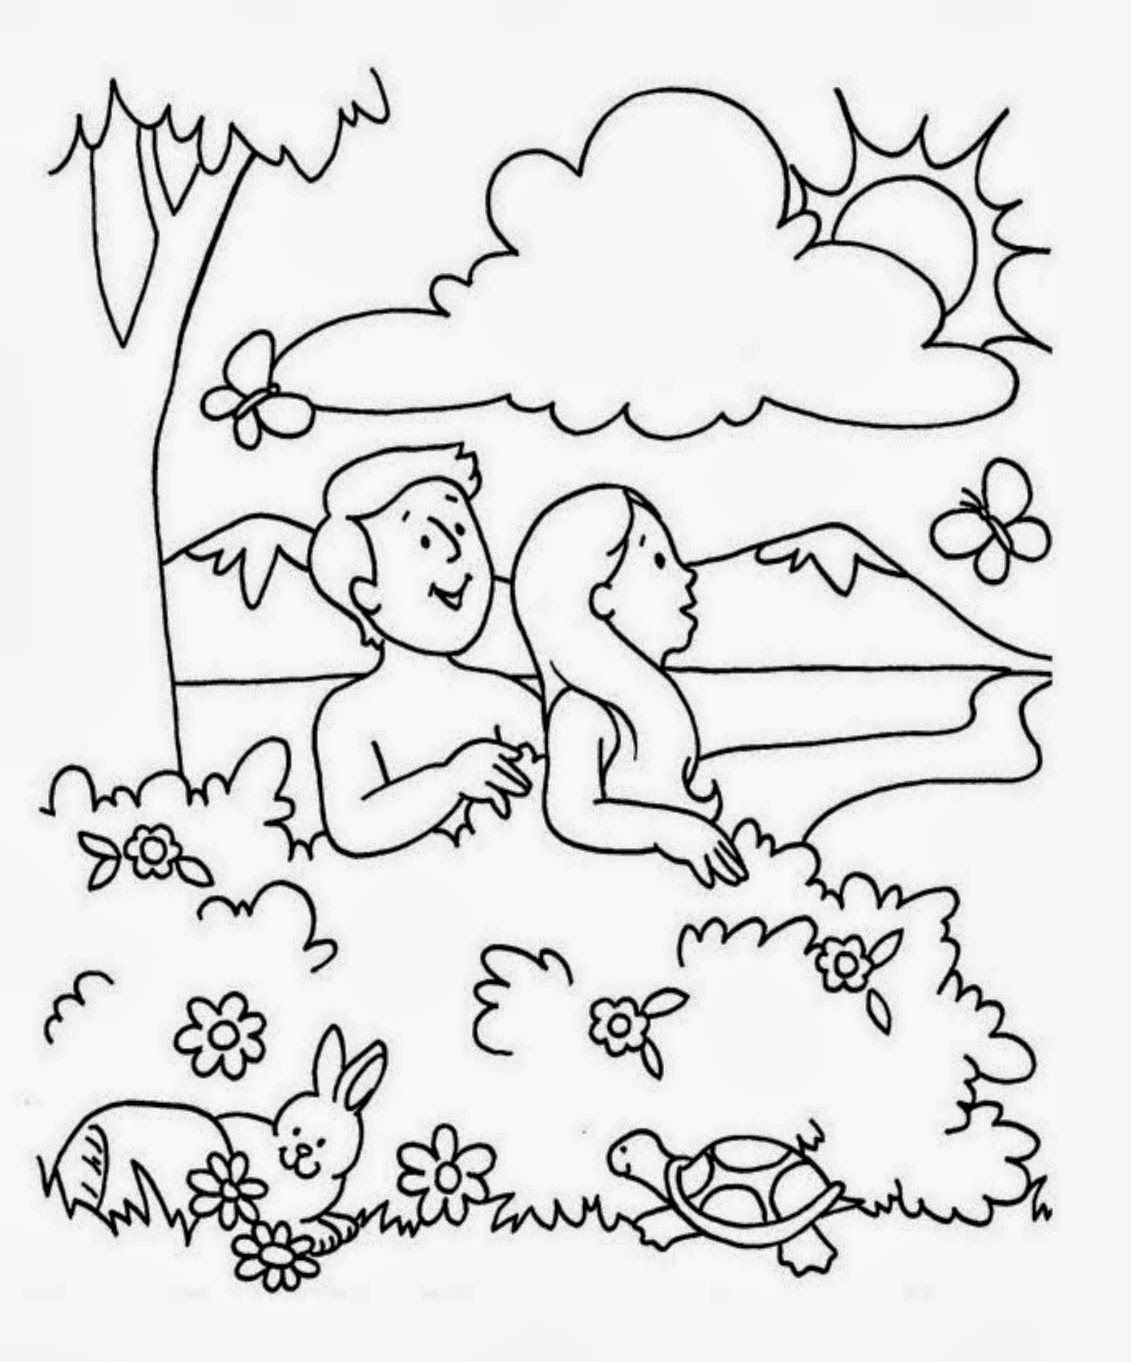 Адам и ева в саду для раскрашивания для детей